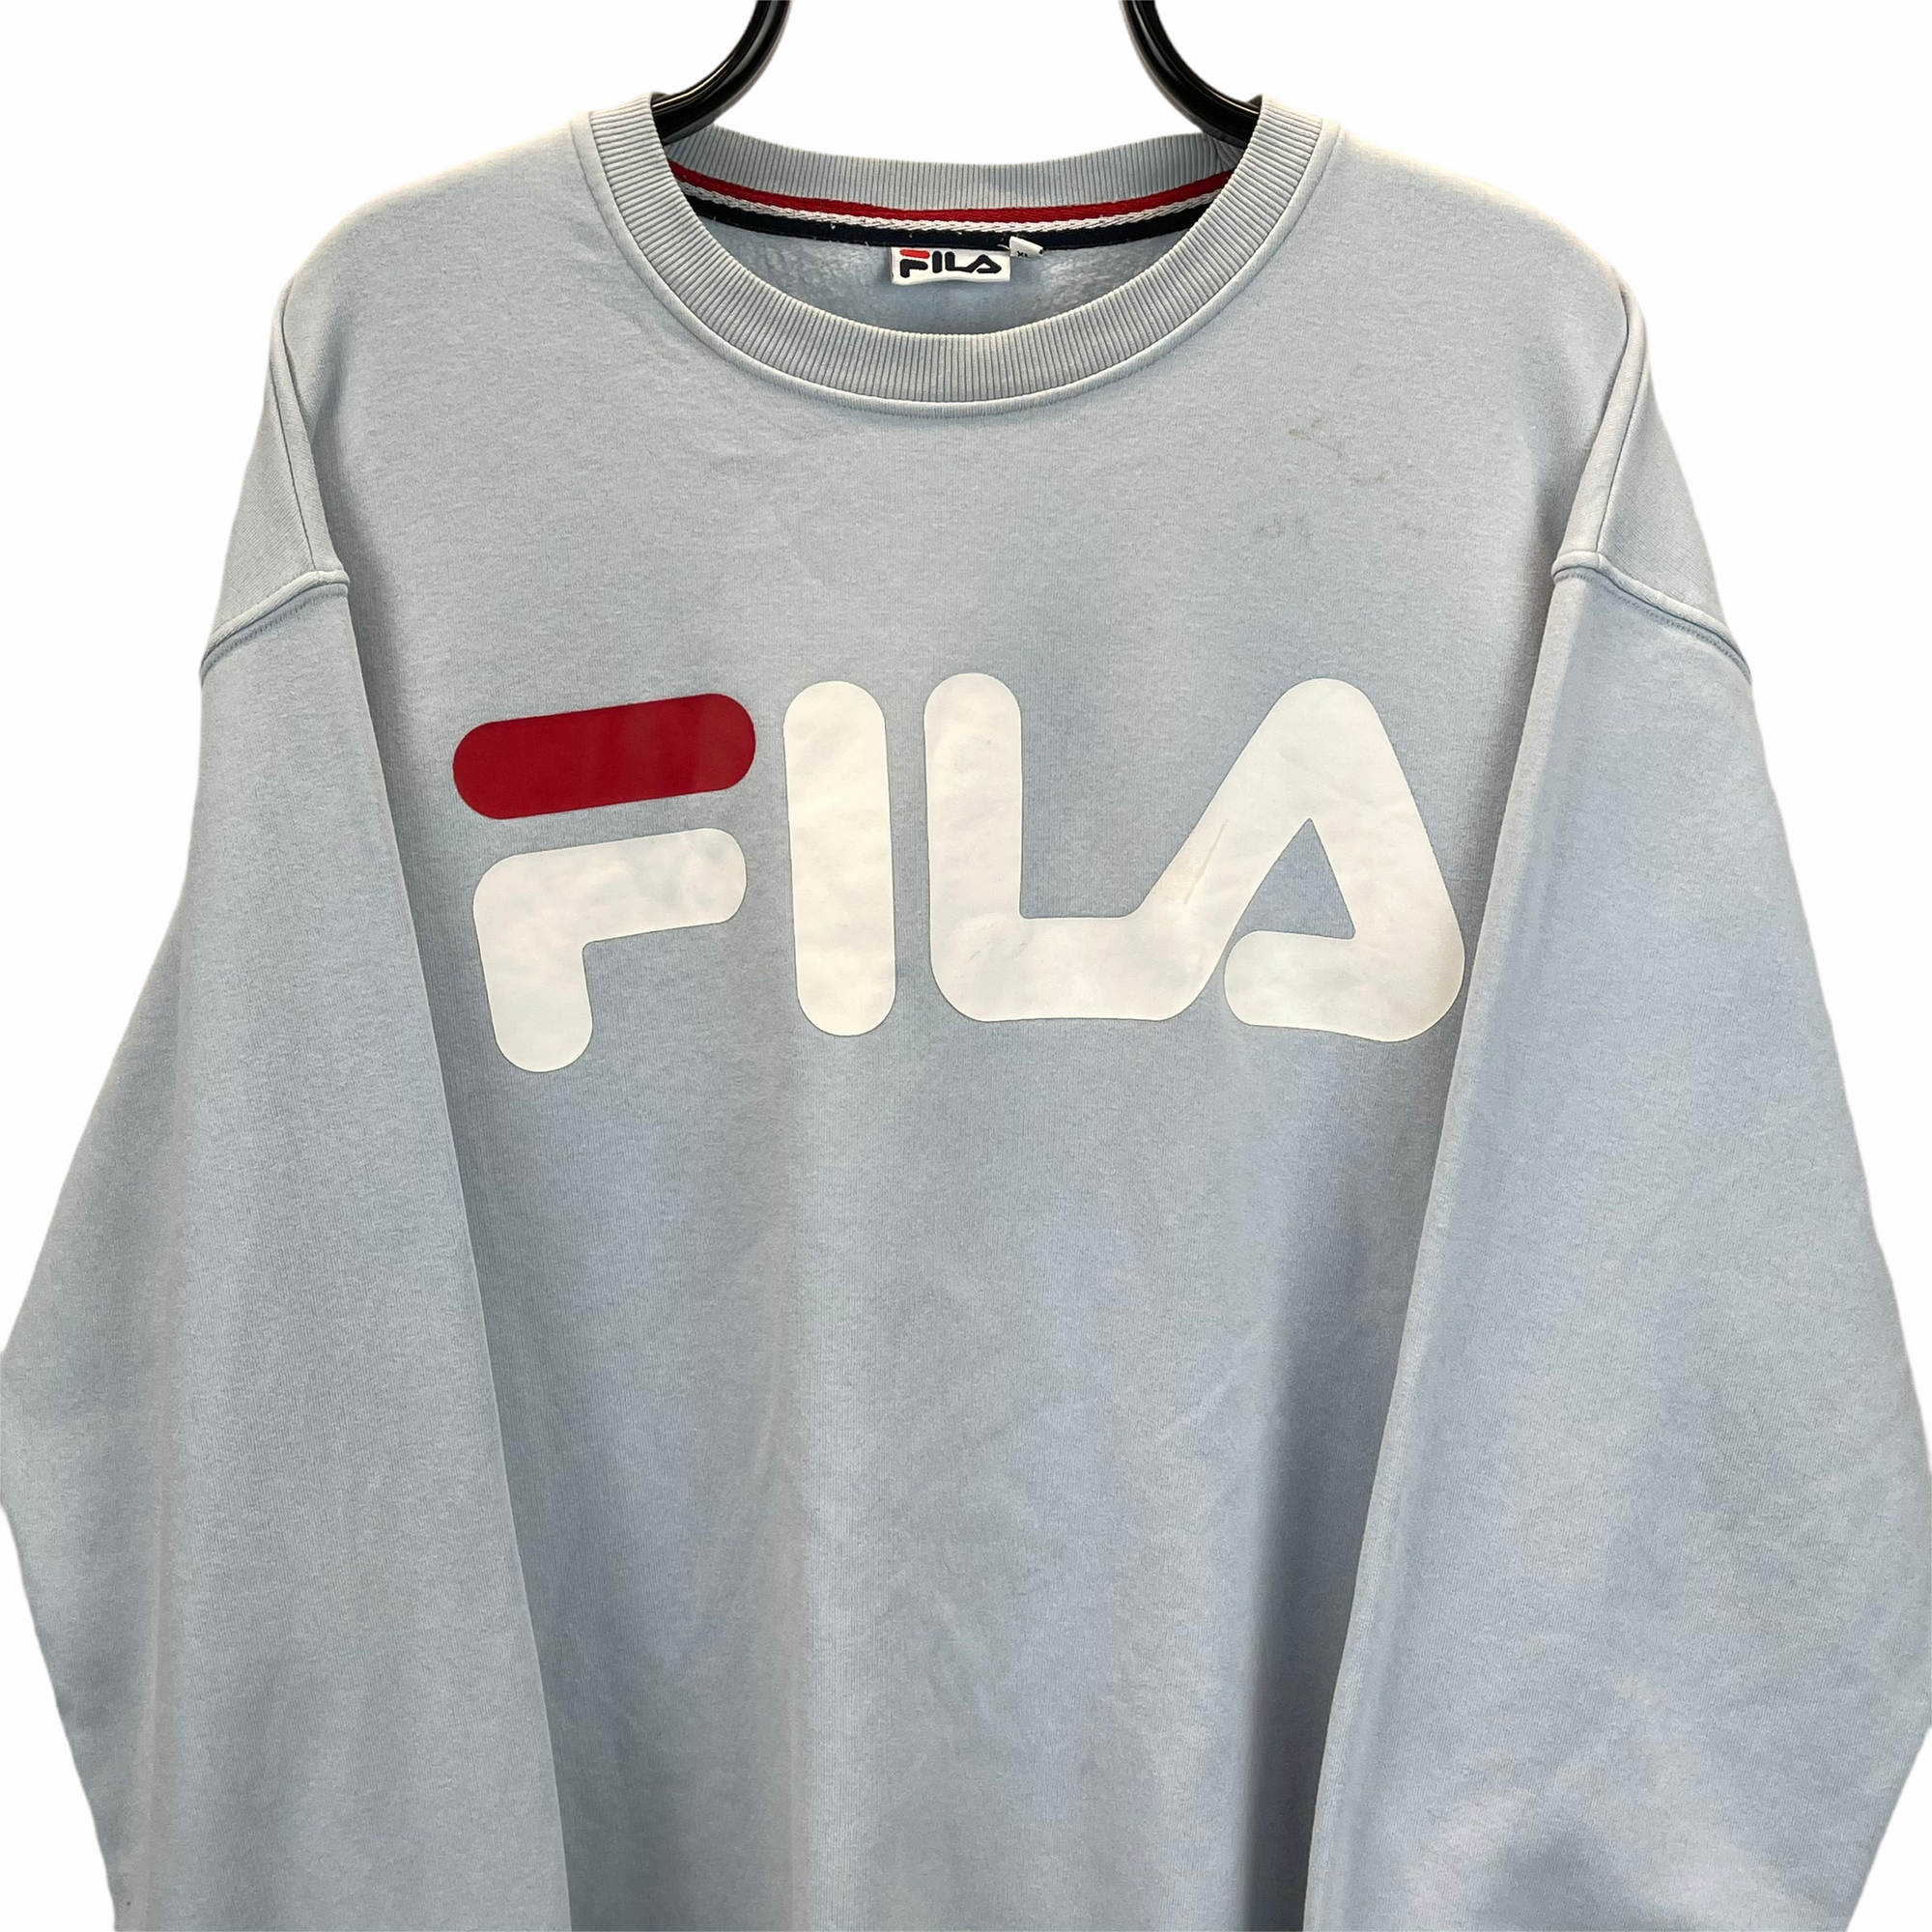 Fila Spellout Sweatshirt in Baby Blue - Men's XL/Women's XXL